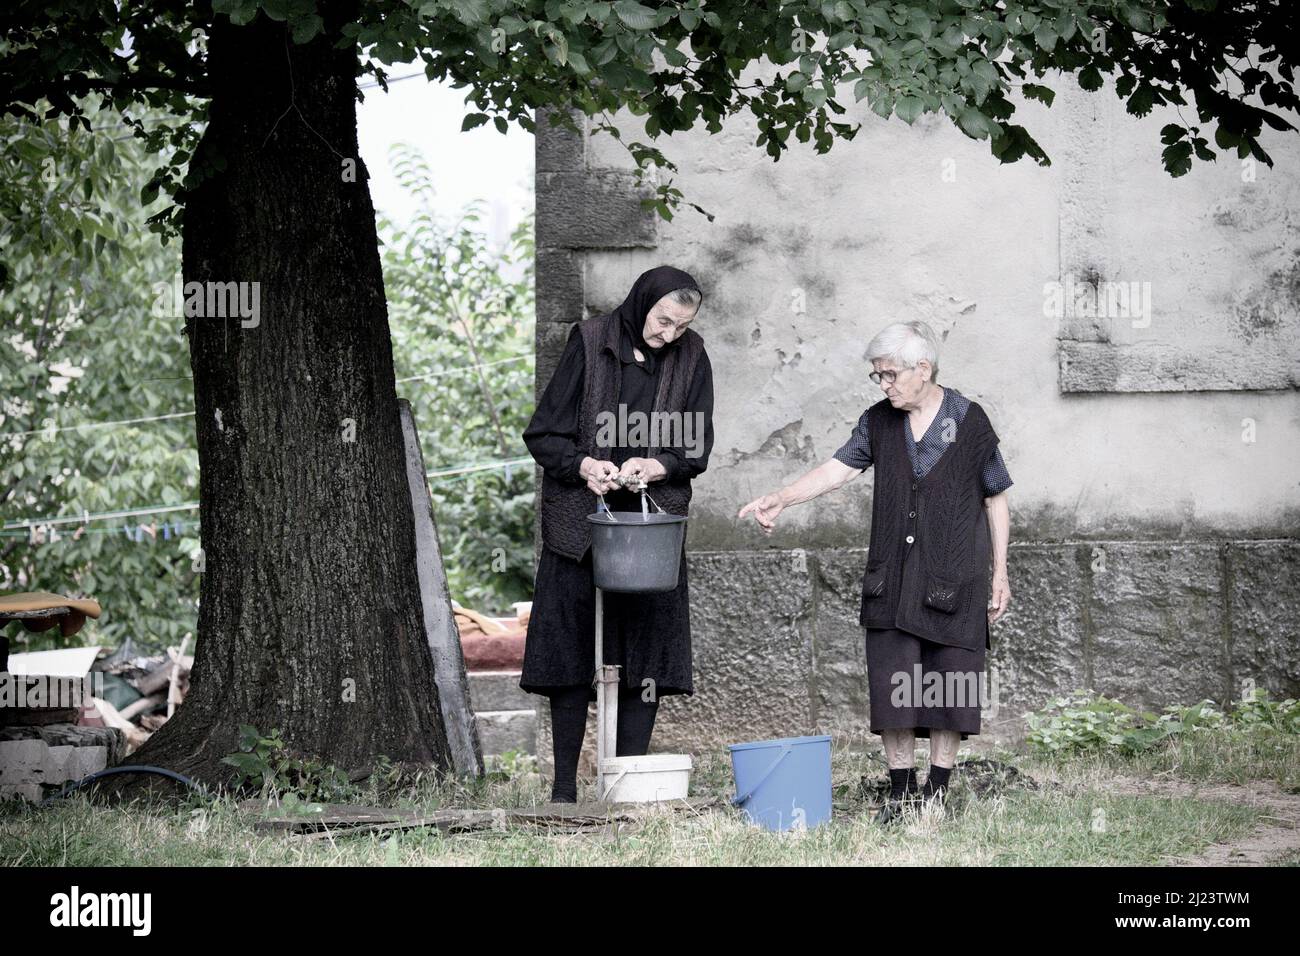 NIKSIC, MONTENEGRO - 25 LUGLIO 2016: Due donne anziane in abiti neri stanno riempiendo alcuni secchi con l'acqua di un rubinetto all'aperto sotto un grande albero Foto Stock